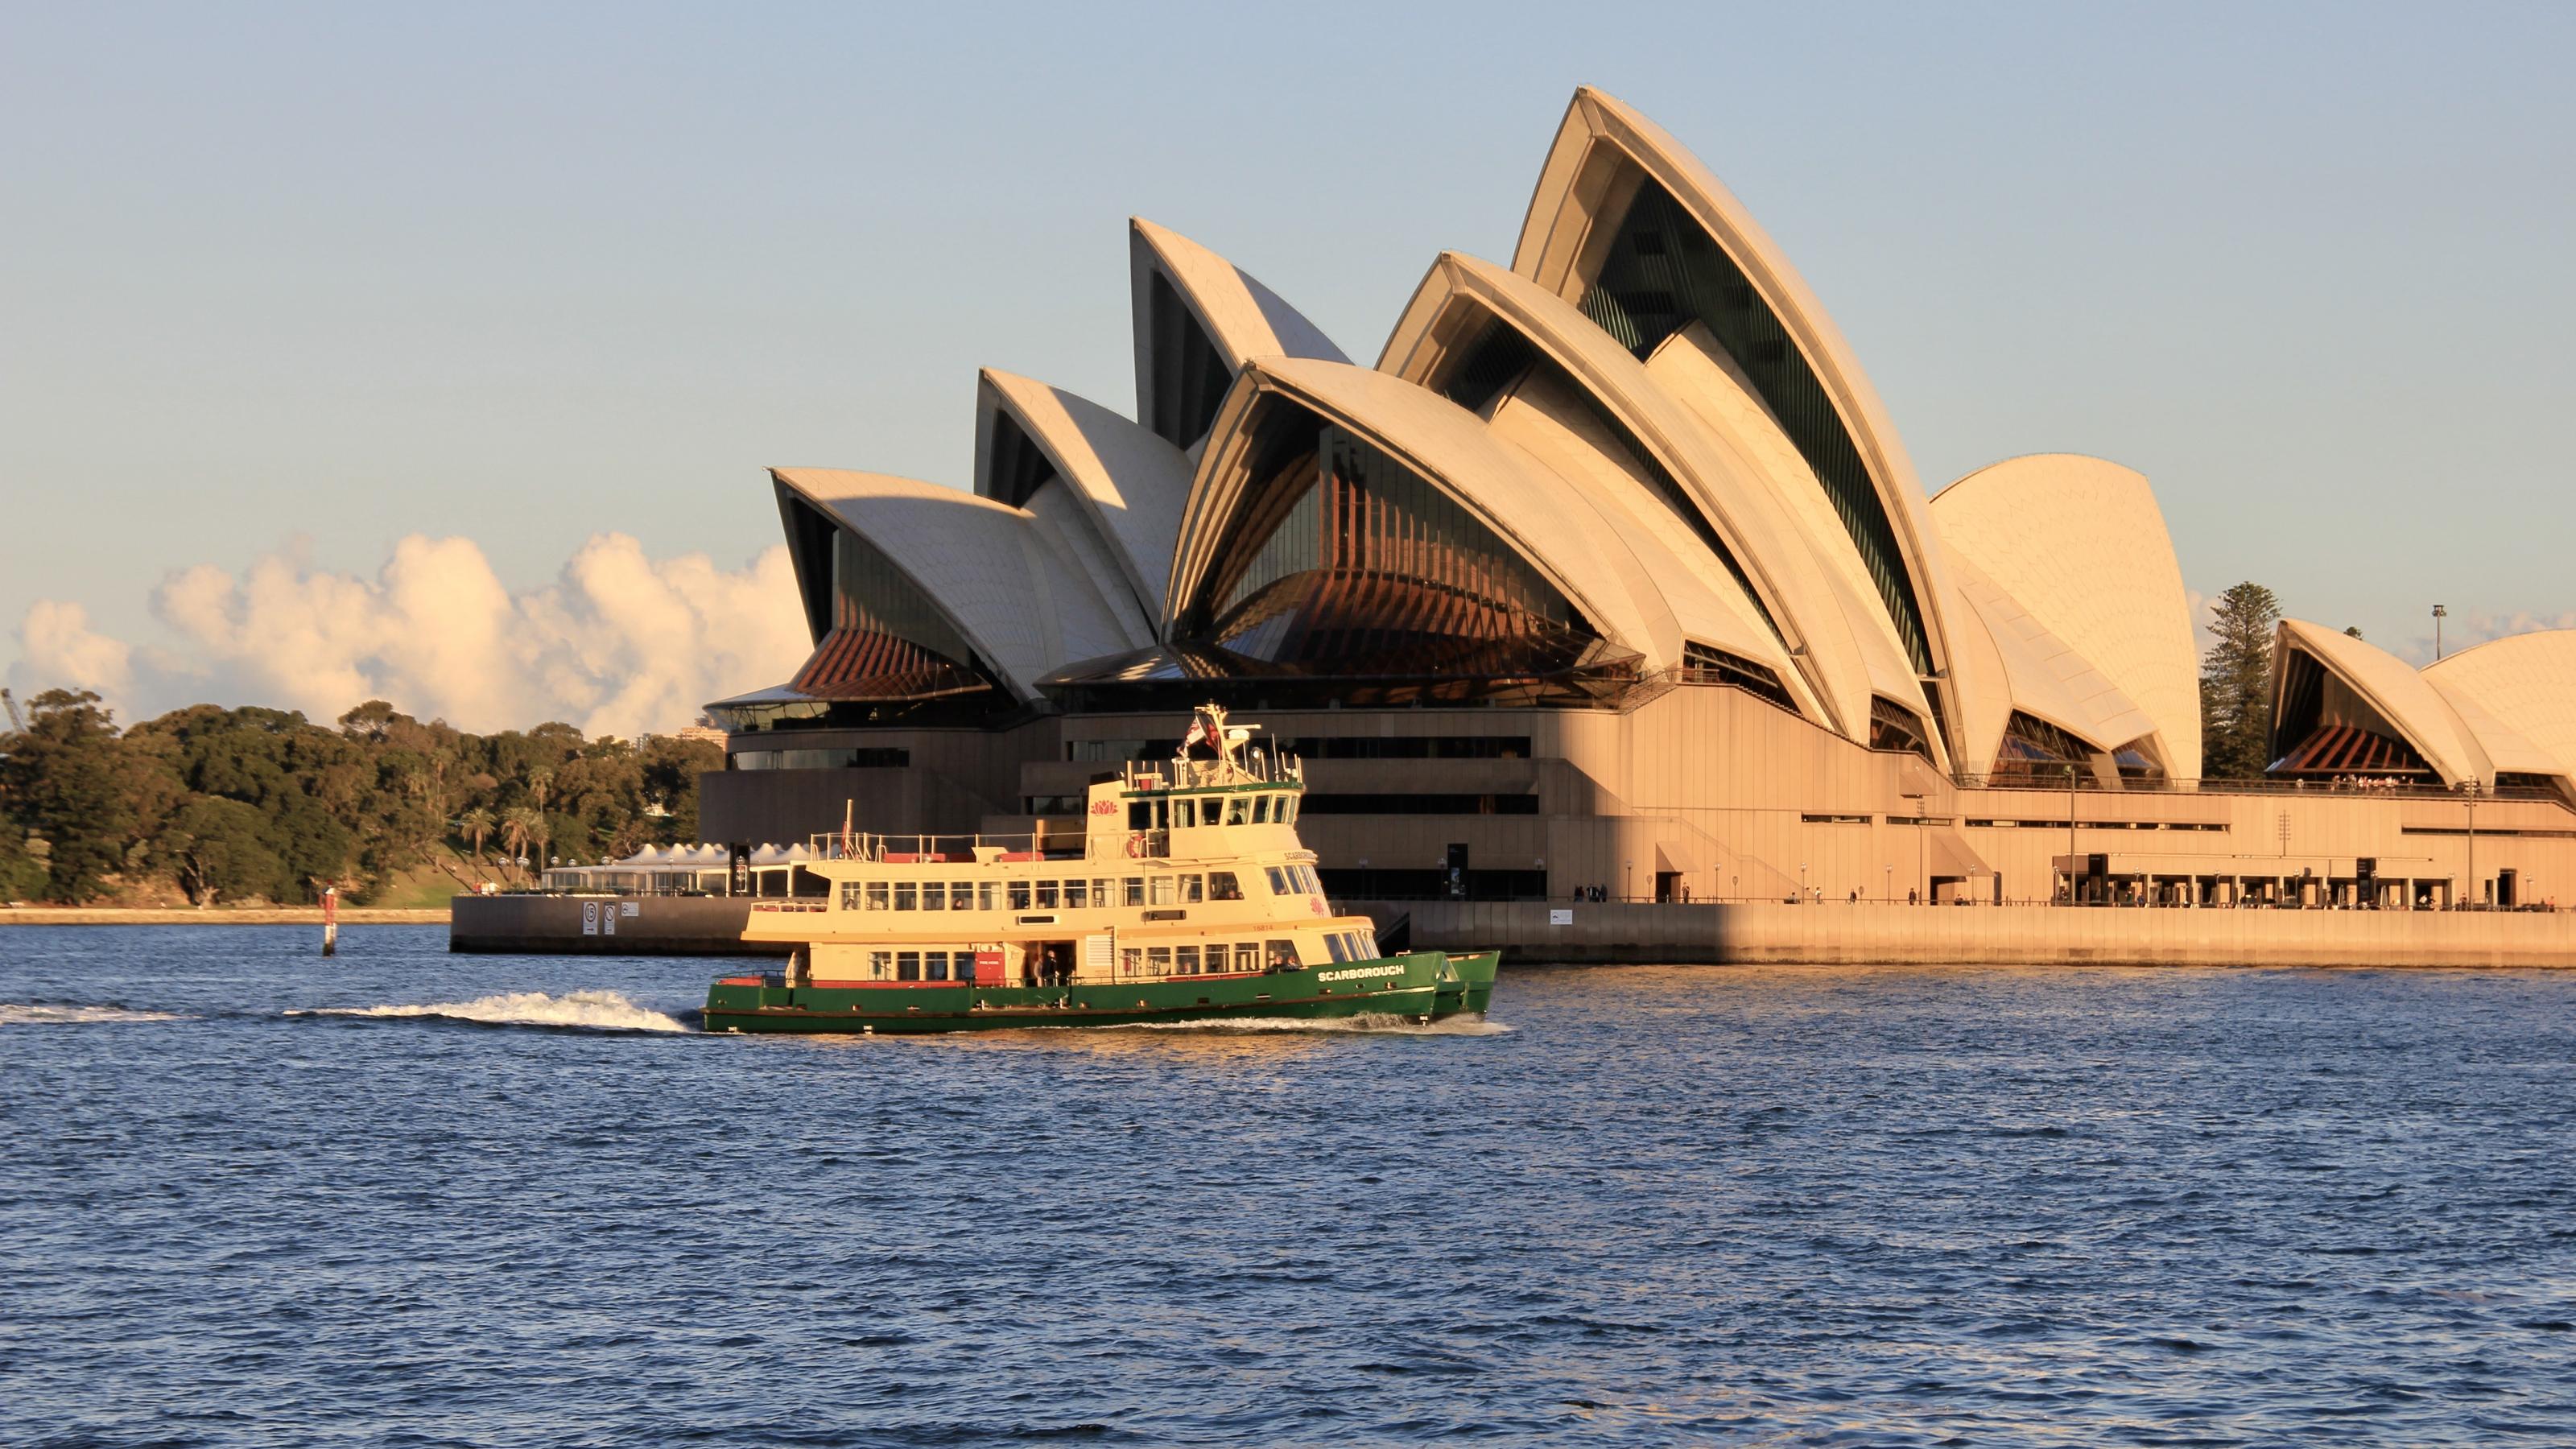 Das muscheförmige weiße Dach des Sydney Opera Houses am Hafen von Sydney. Es ist eines der Wahrzeichen Australiens. Vor dem Gebäude sieht man eine der gelb-grünen Hafenfähren im Wasser.